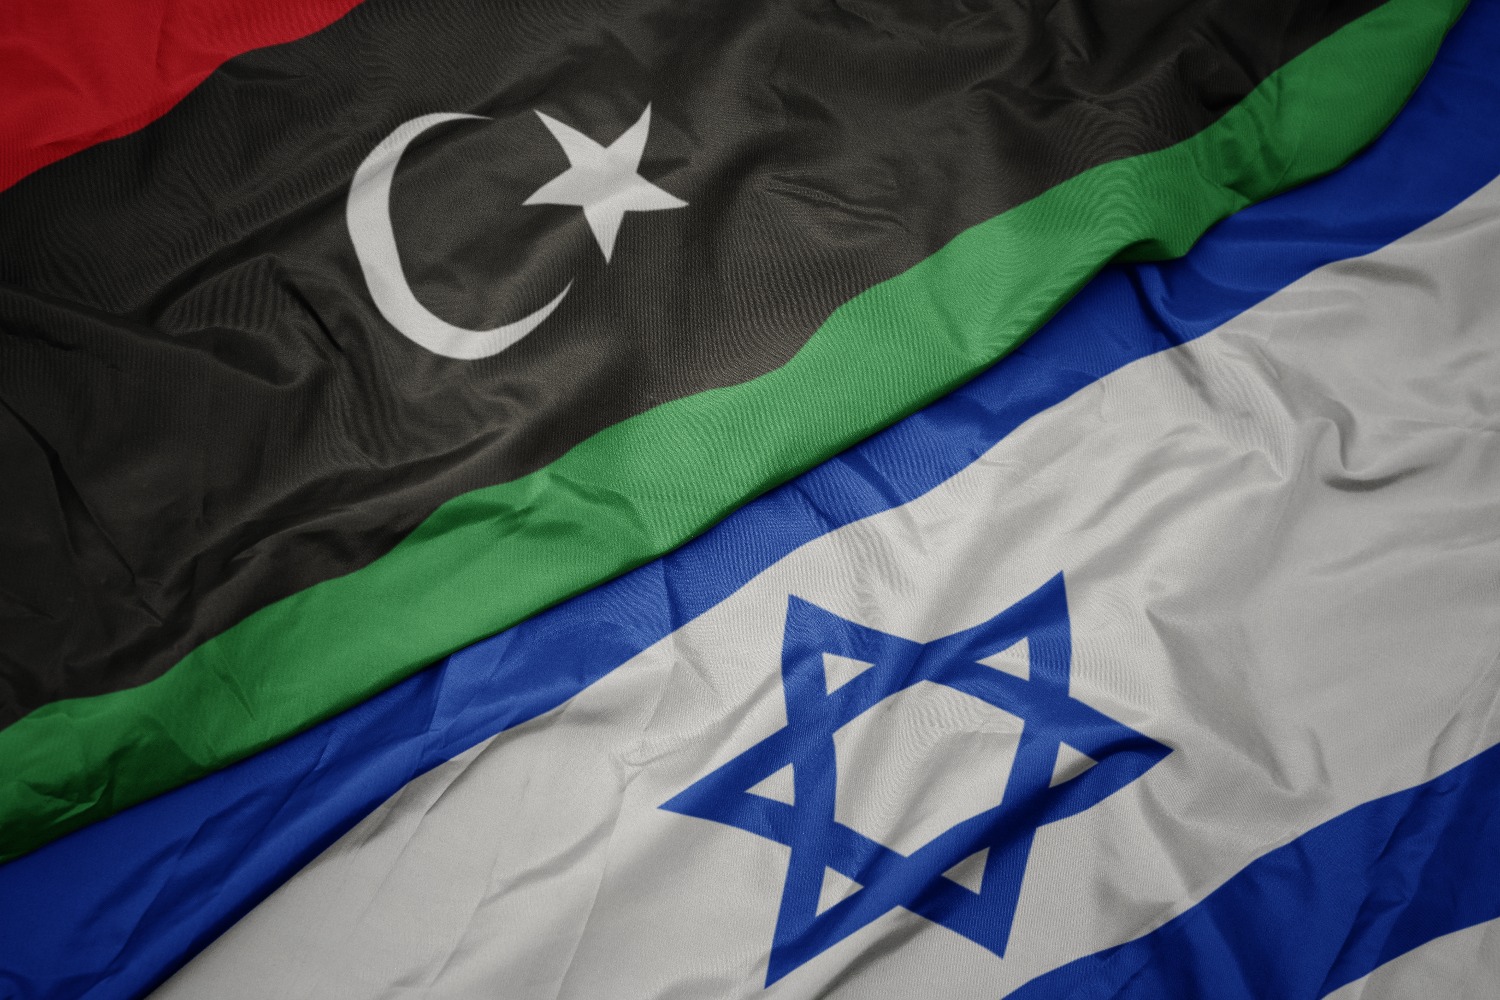  Глава МИД Ливии лишилась поста из-за встречи с израильским коллегой Эли Коэном 